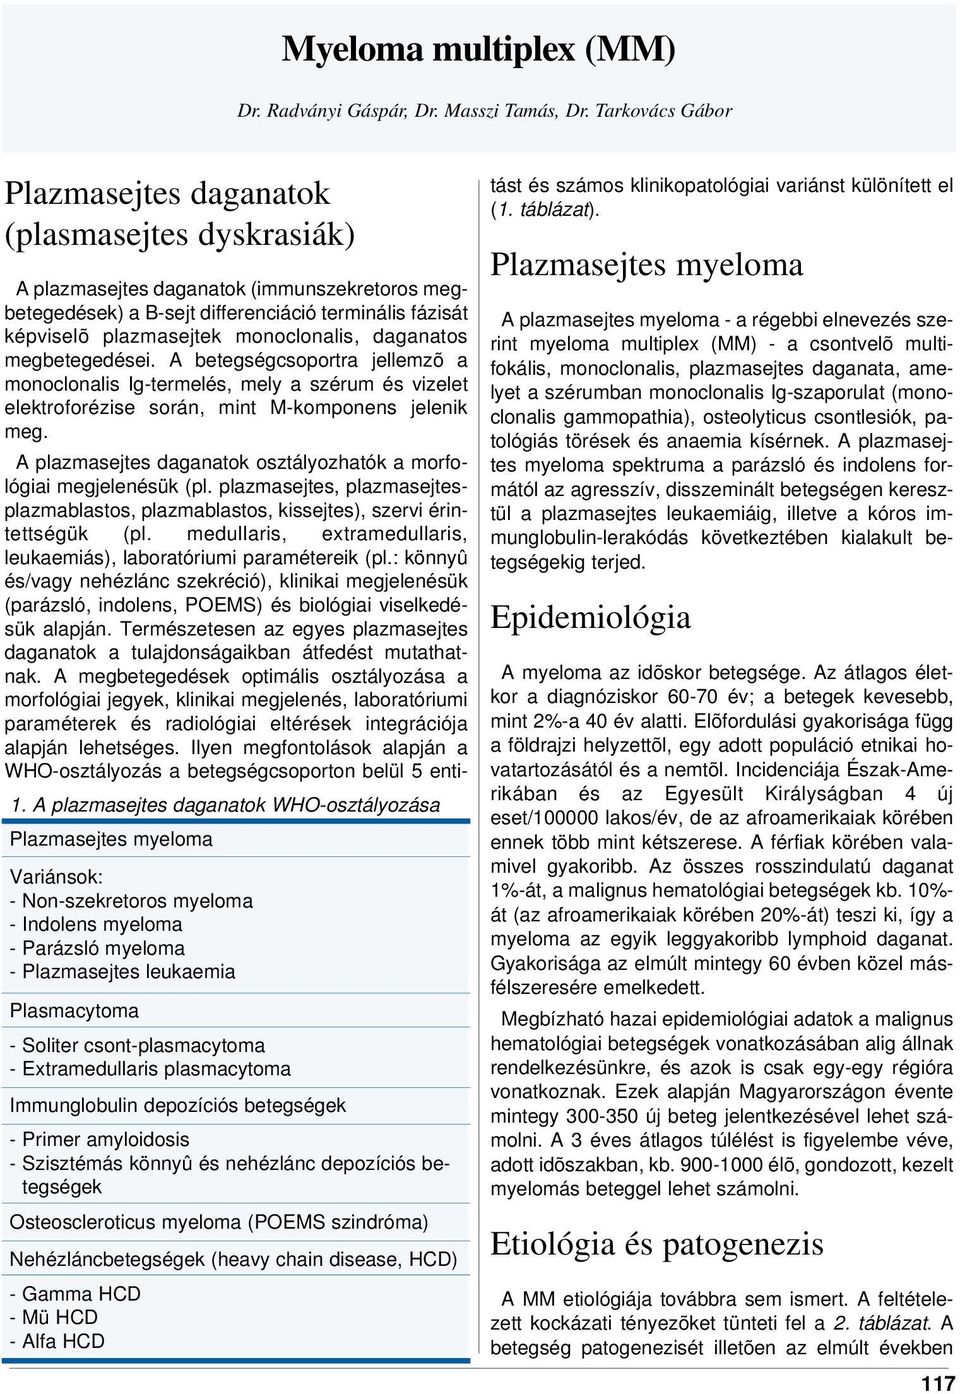 csont-plasmacytoma - Extramedullaris plasmacytoma Immunglobulin depozíciós betegségek - Primer amyloidosis - Szisztémás könnyû és nehézlánc depozíciós betegségek Osteoscleroticus myeloma (POEMS